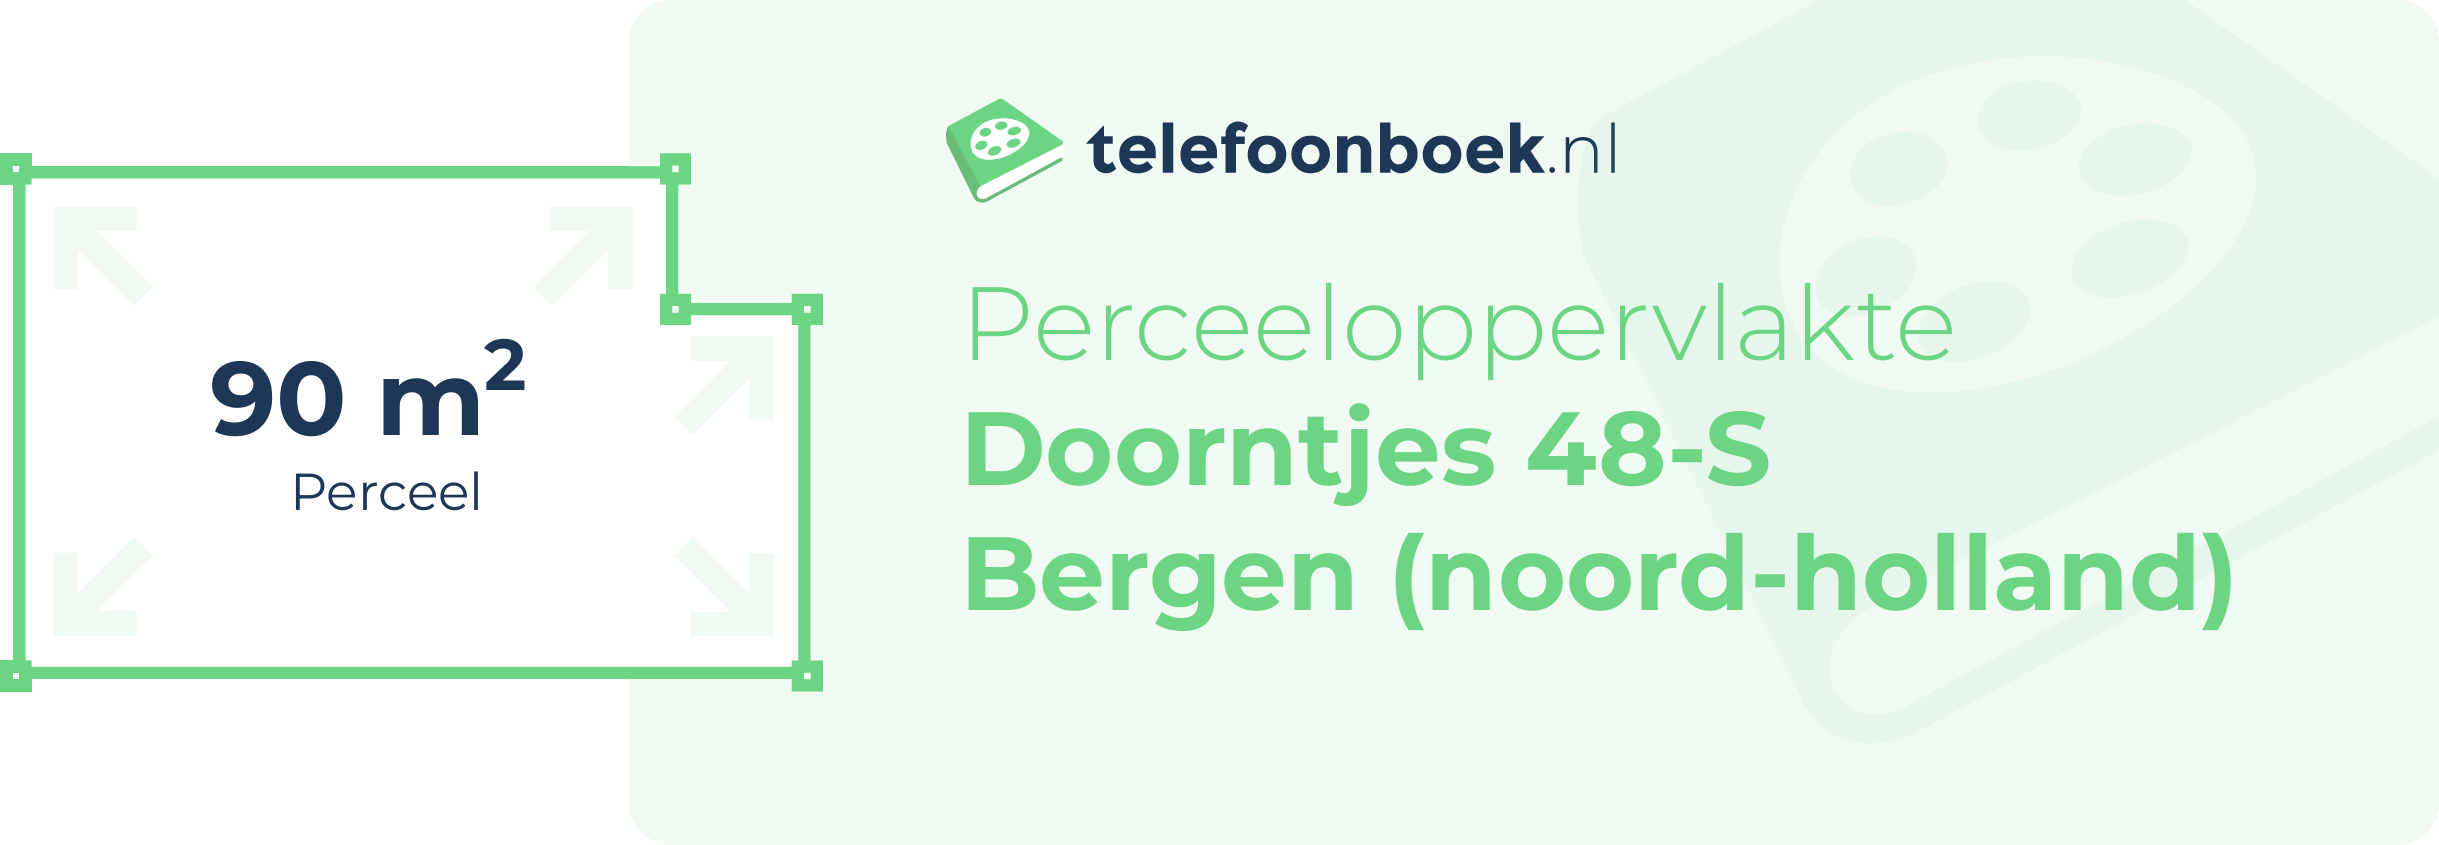 Perceeloppervlakte Doorntjes 48-S Bergen (Noord-Holland)